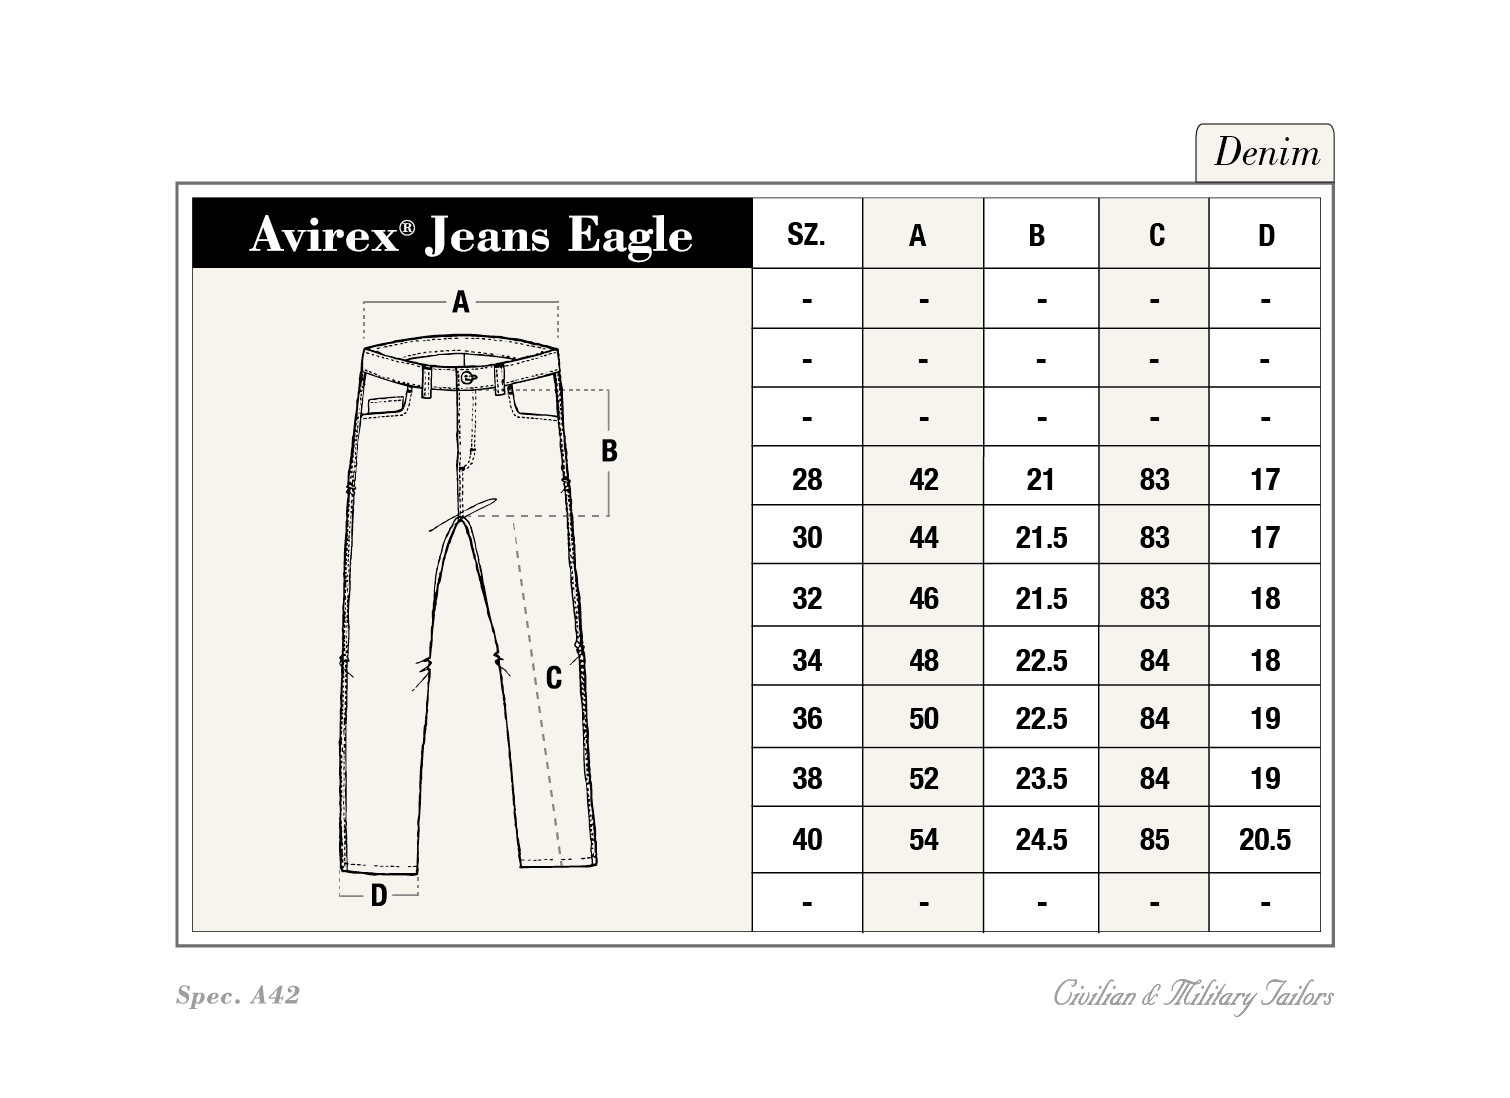 https://avirex.eu/cdn/shop/files/Jeans_Size_Chart.png?v=4929268582050299919